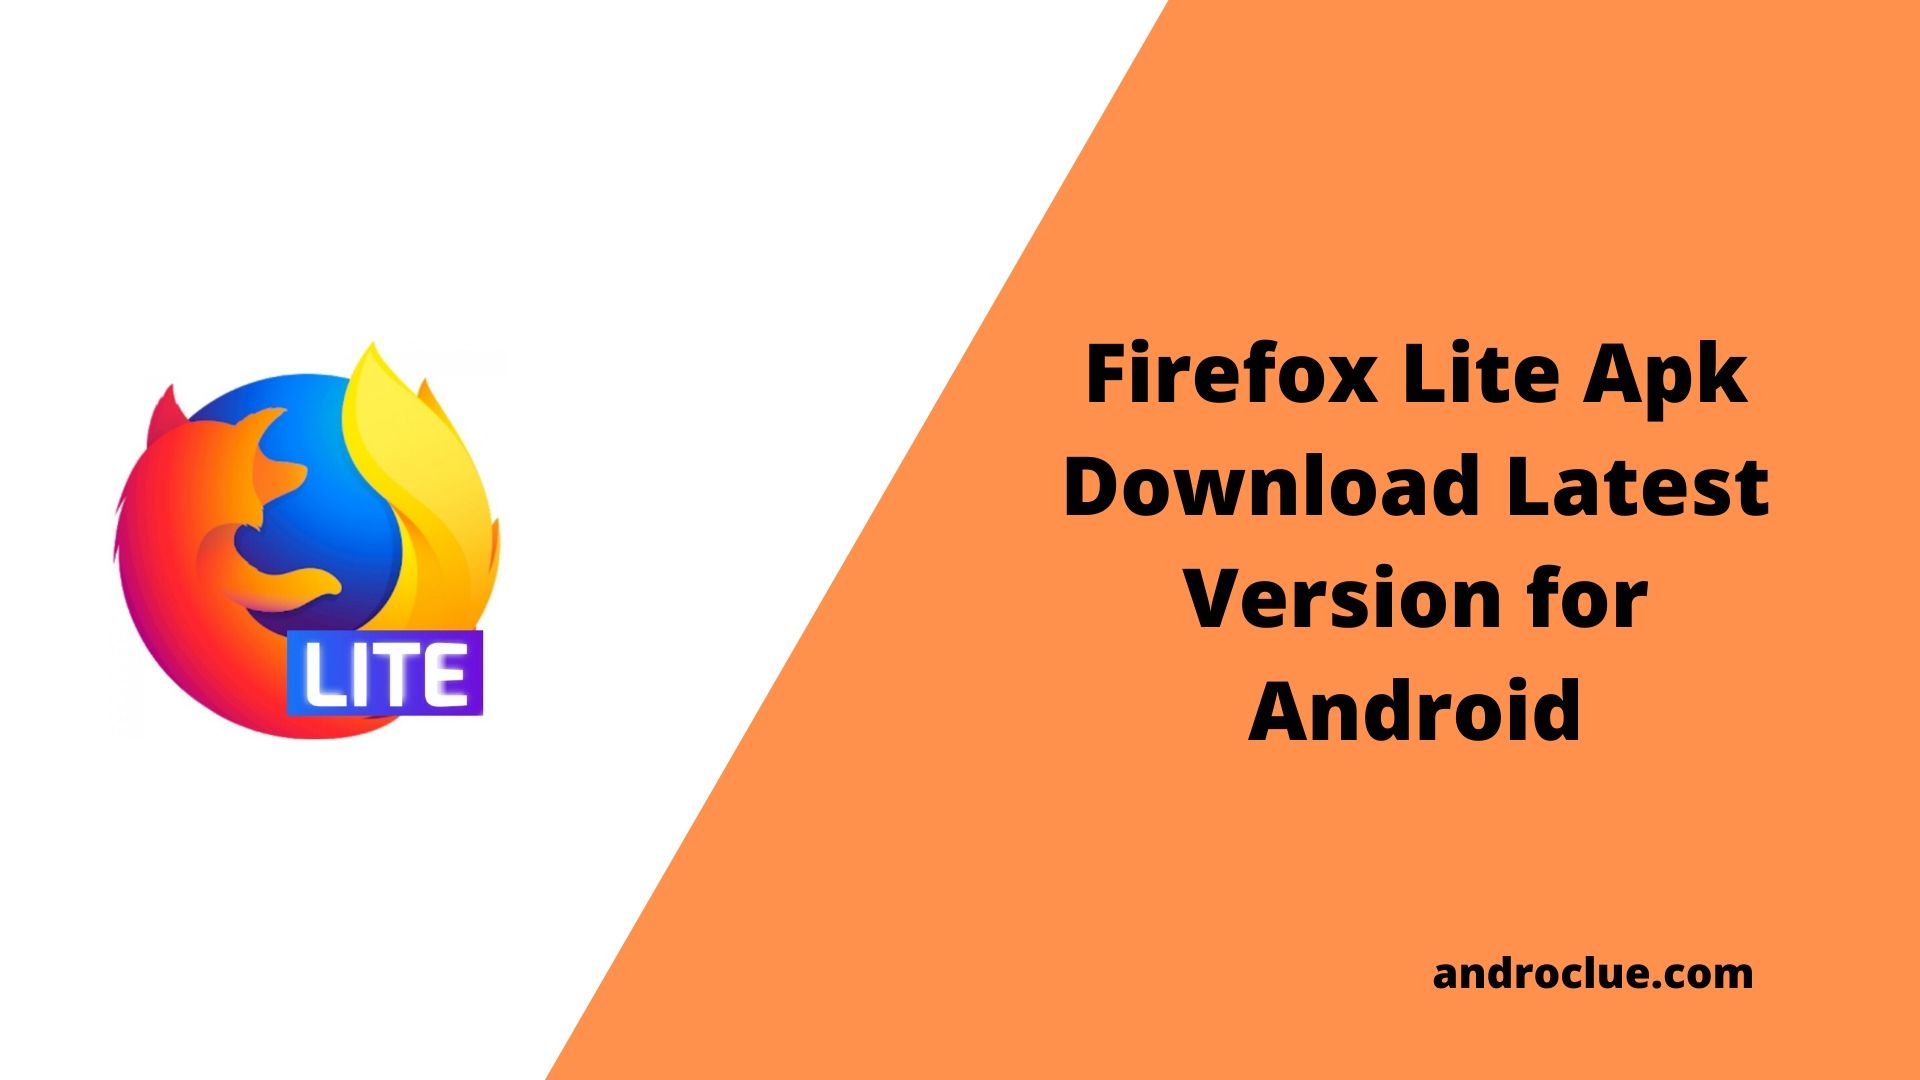 Firefox Lite Apk Download da versão mais recente para Android (2019)